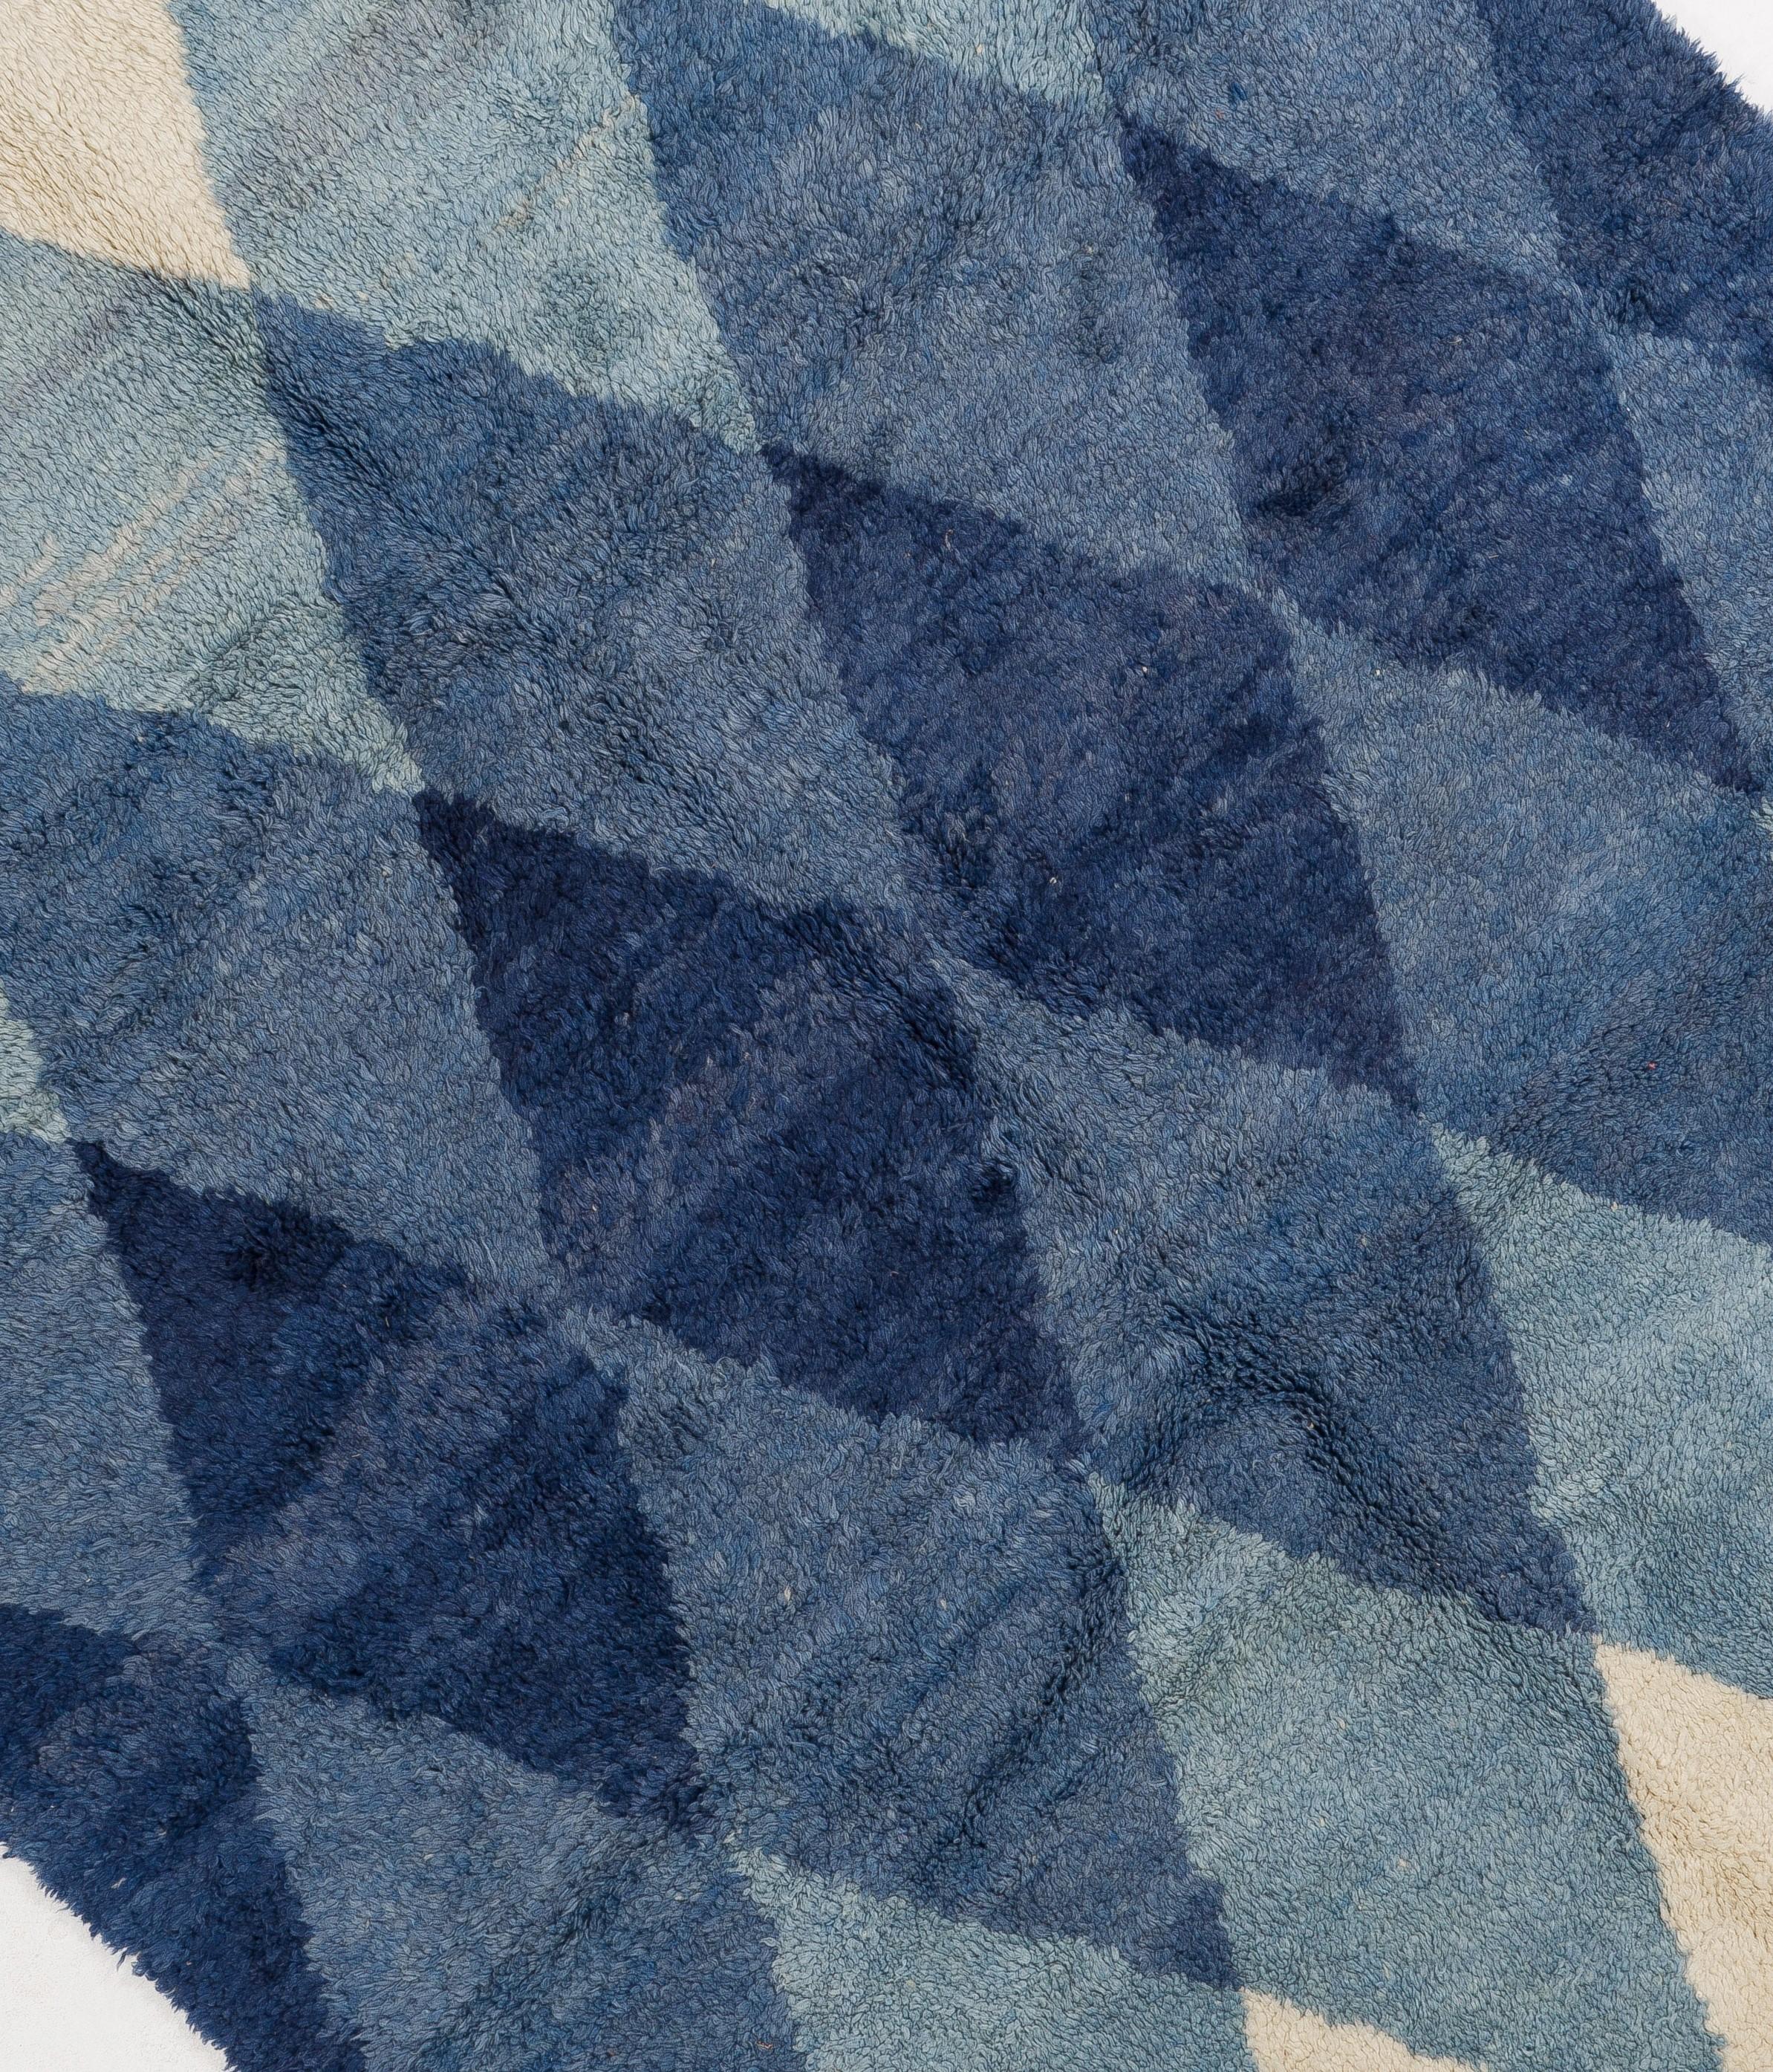 Un exquis tapis marocain tout neuf, noué à la main à partir de laine de mouton fine filée à la main, avec un motif géométrique audacieux dans de belles nuances de bleu indigo sur un fond crème. Une véritable pièce d'apparat qui peut facilement